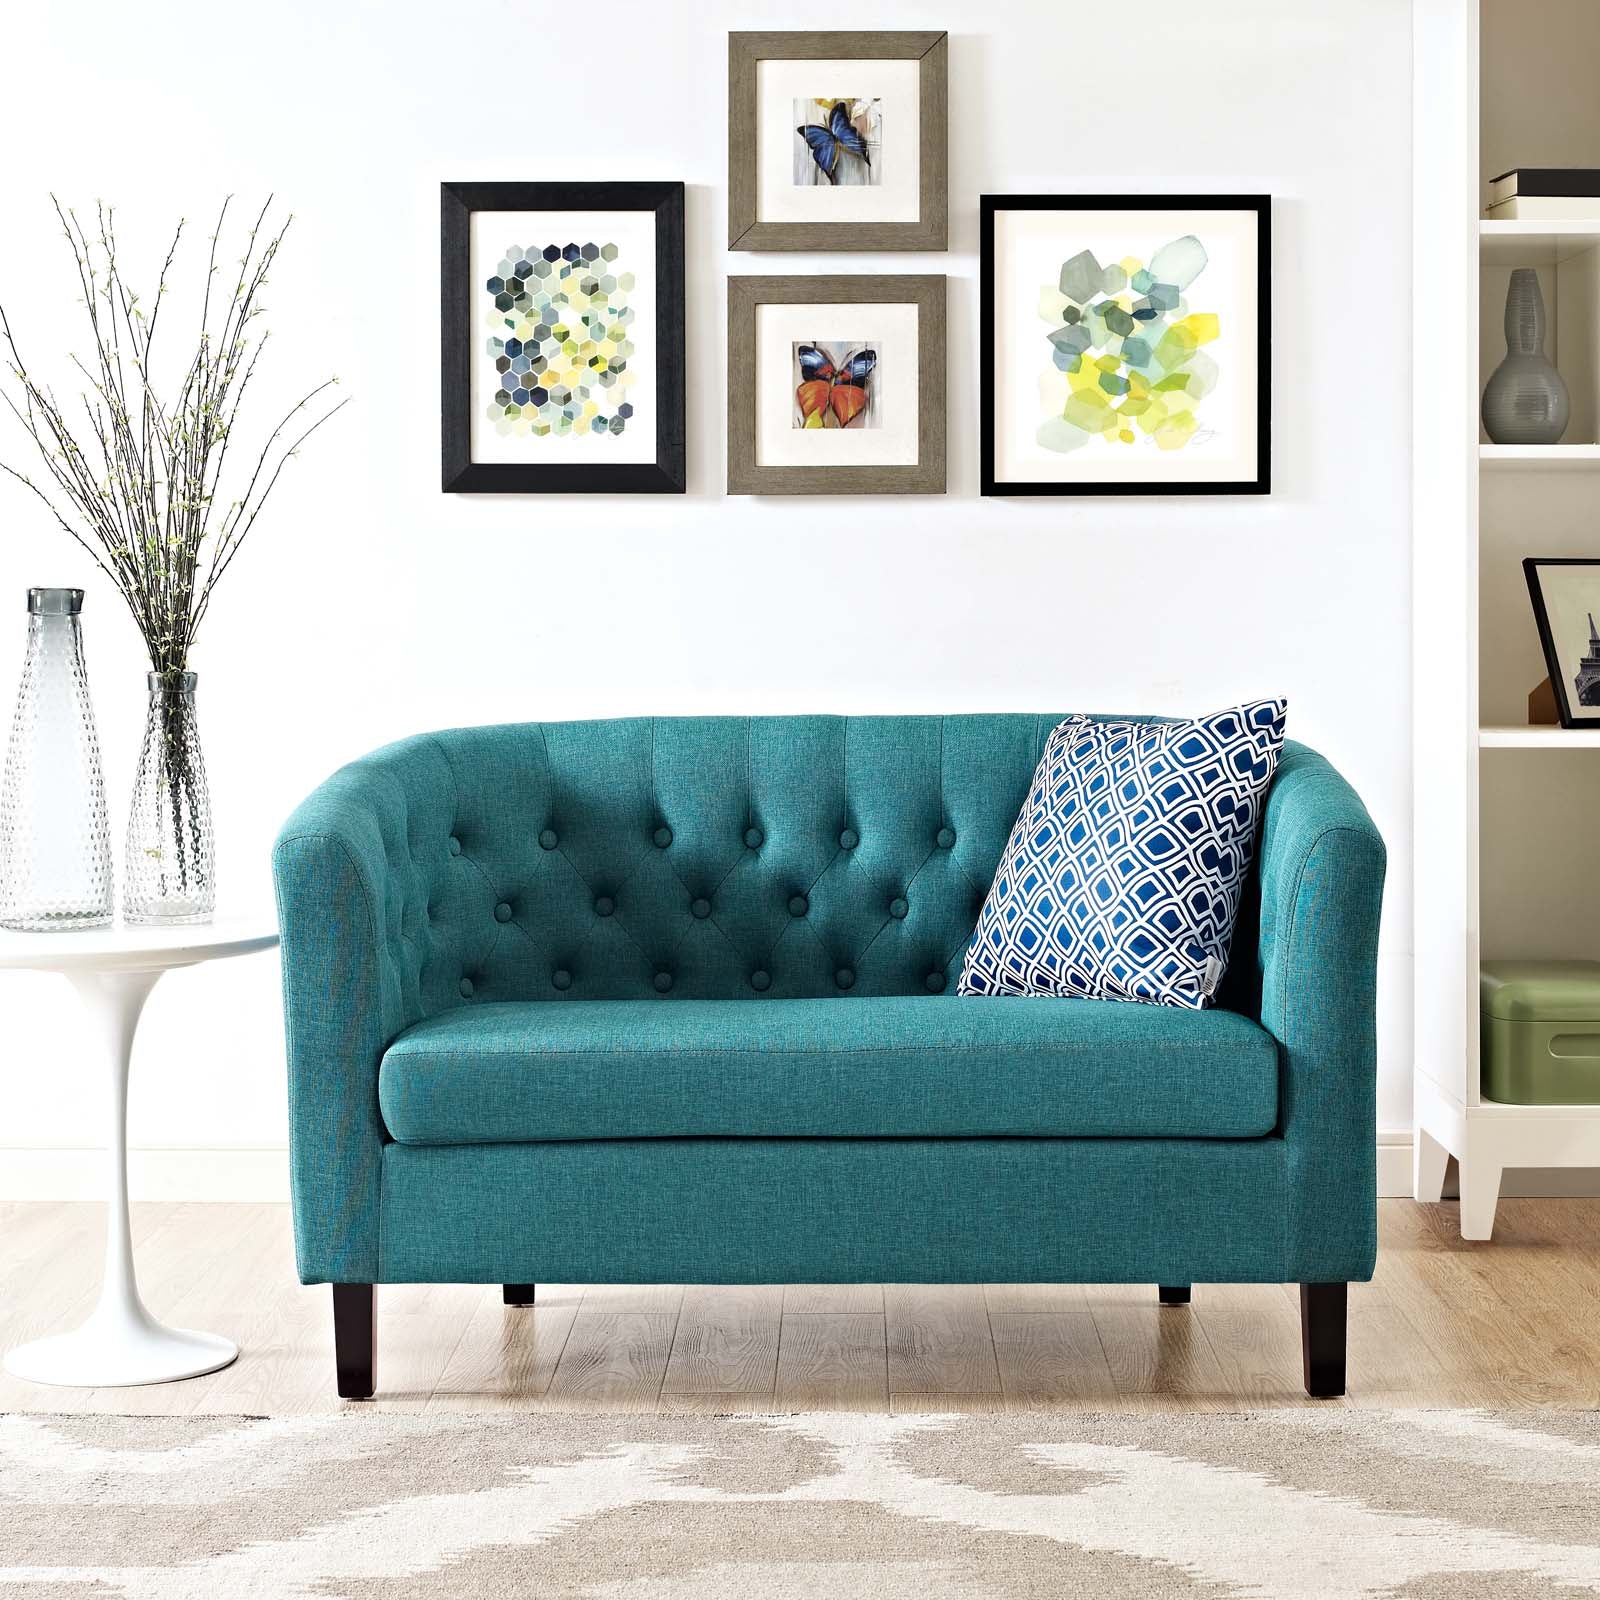 Prospect Upholstered Fabric Loveseat - East Shore Modern Home Furnishings